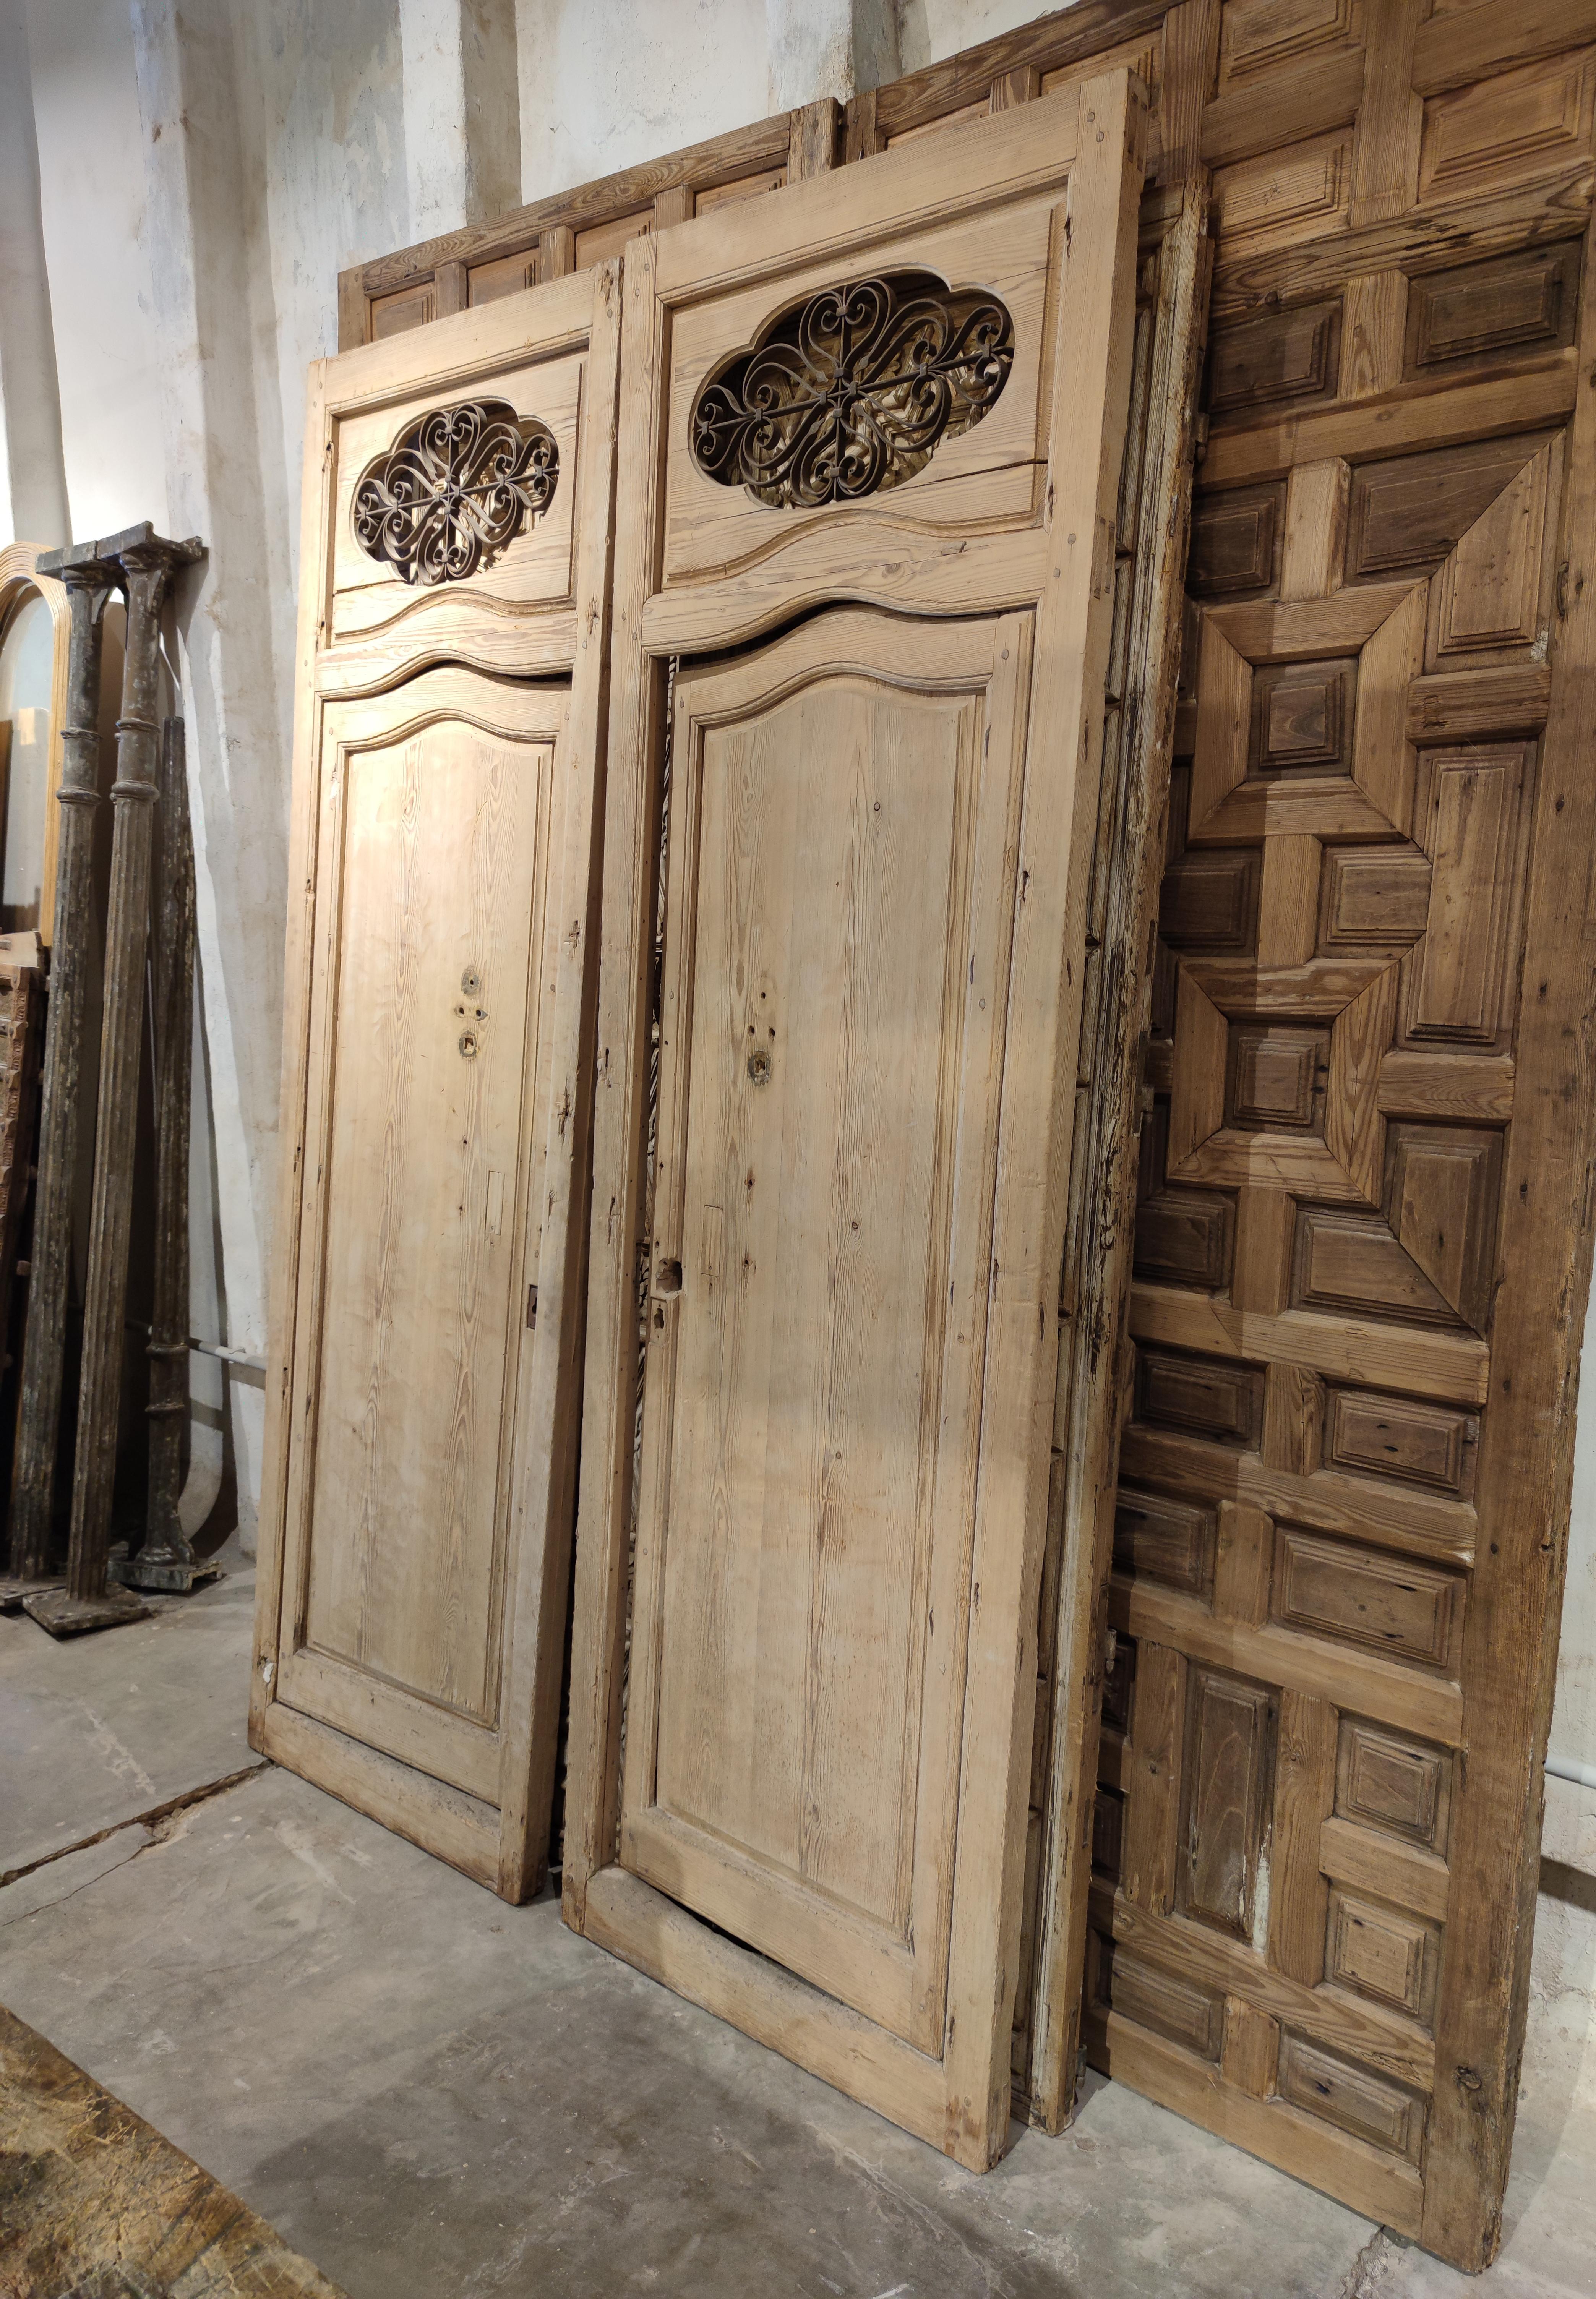 Antike andalusische zweiflügelige Doppeltür aus dem 19. Jahrhundert mit schmiedeeisernem Ziergitter obenauf.

Die Abmessungen entsprechen den einzelnen Türblättern.

 